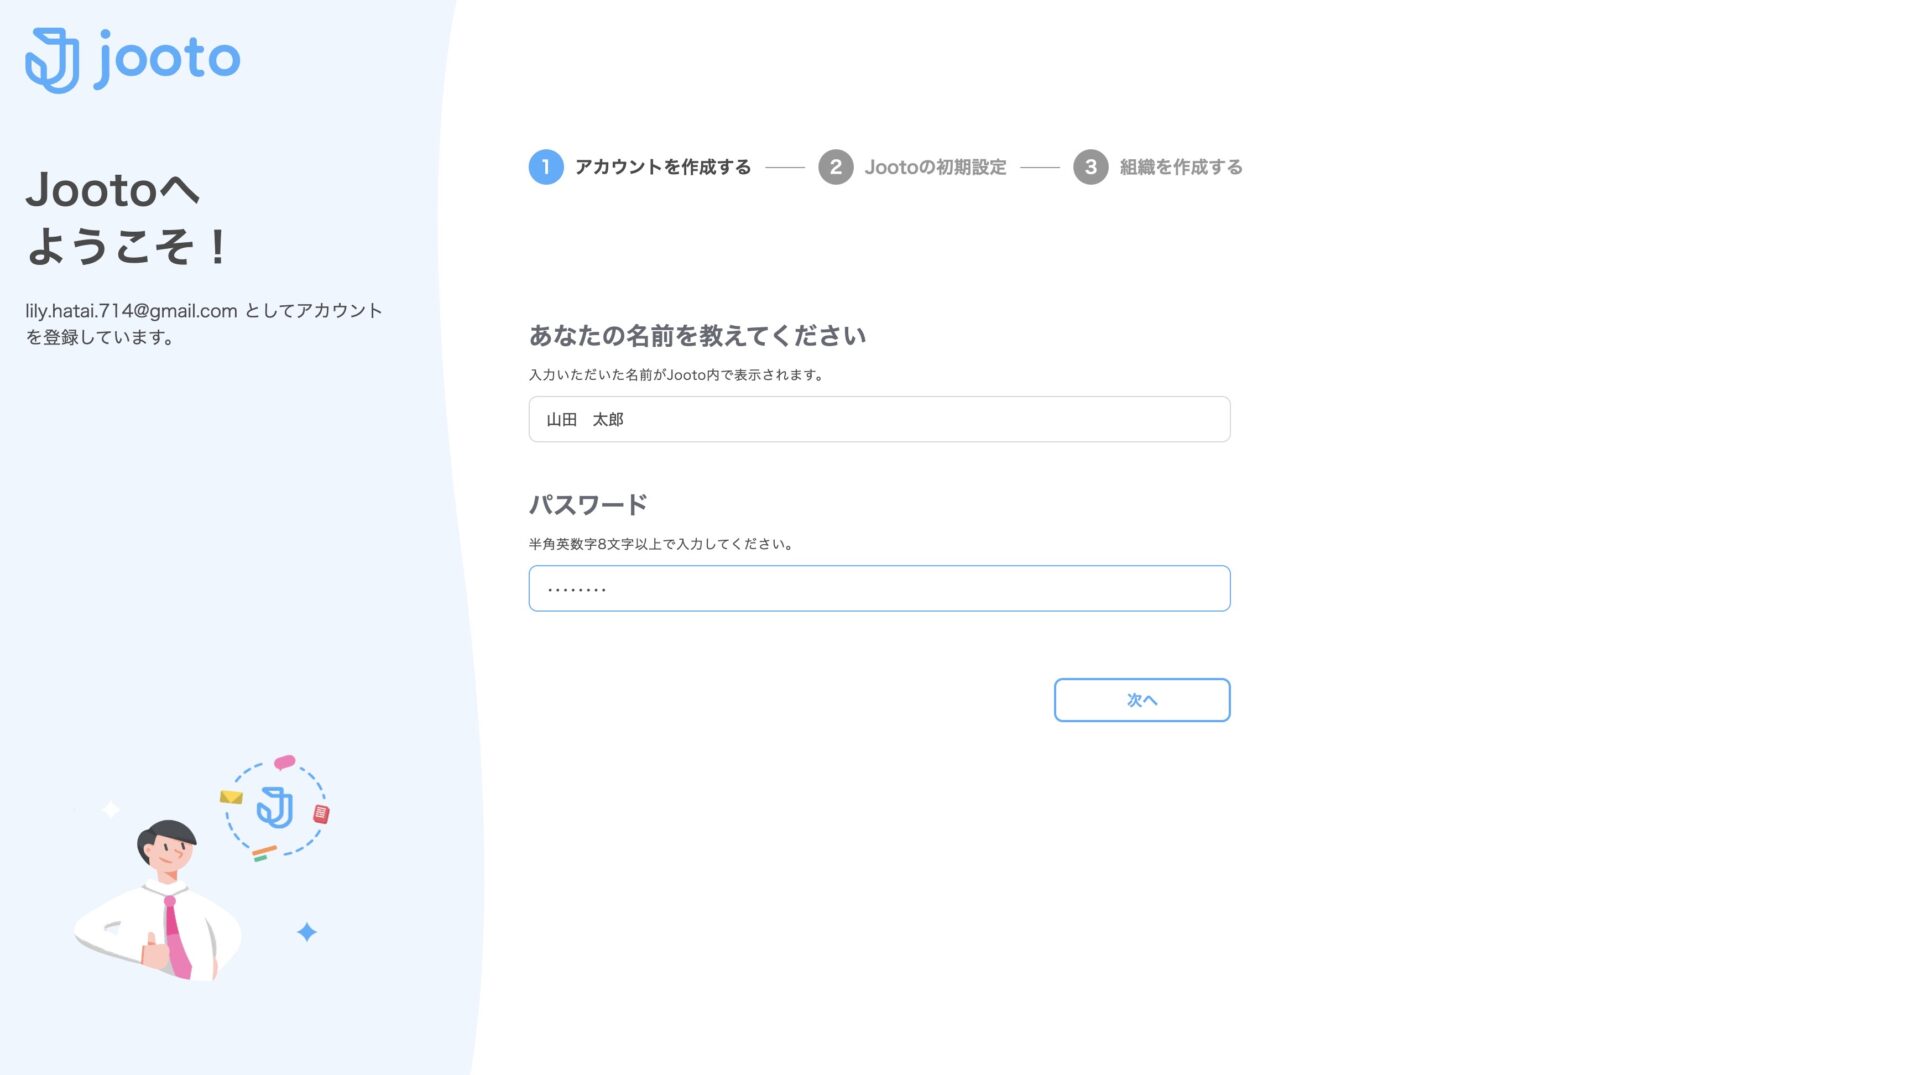 Jootoのアカウント作成で氏名を入力する画面